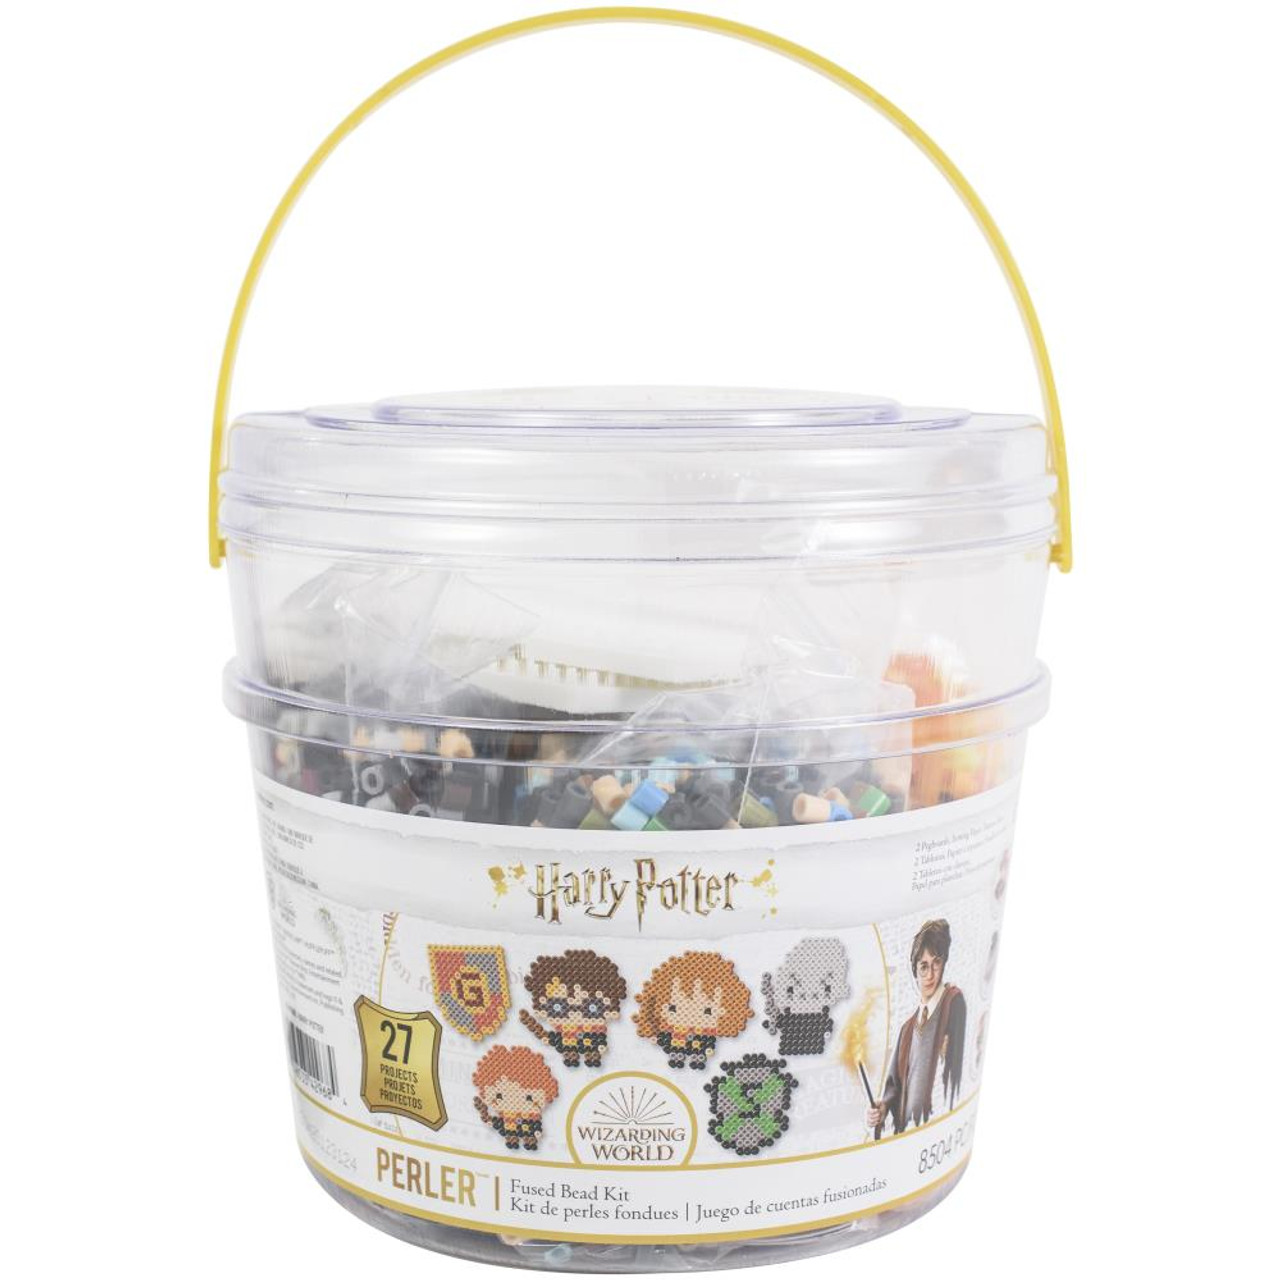  Perler 80-54345 Harry Potter Fuse Bead Kit for Kids